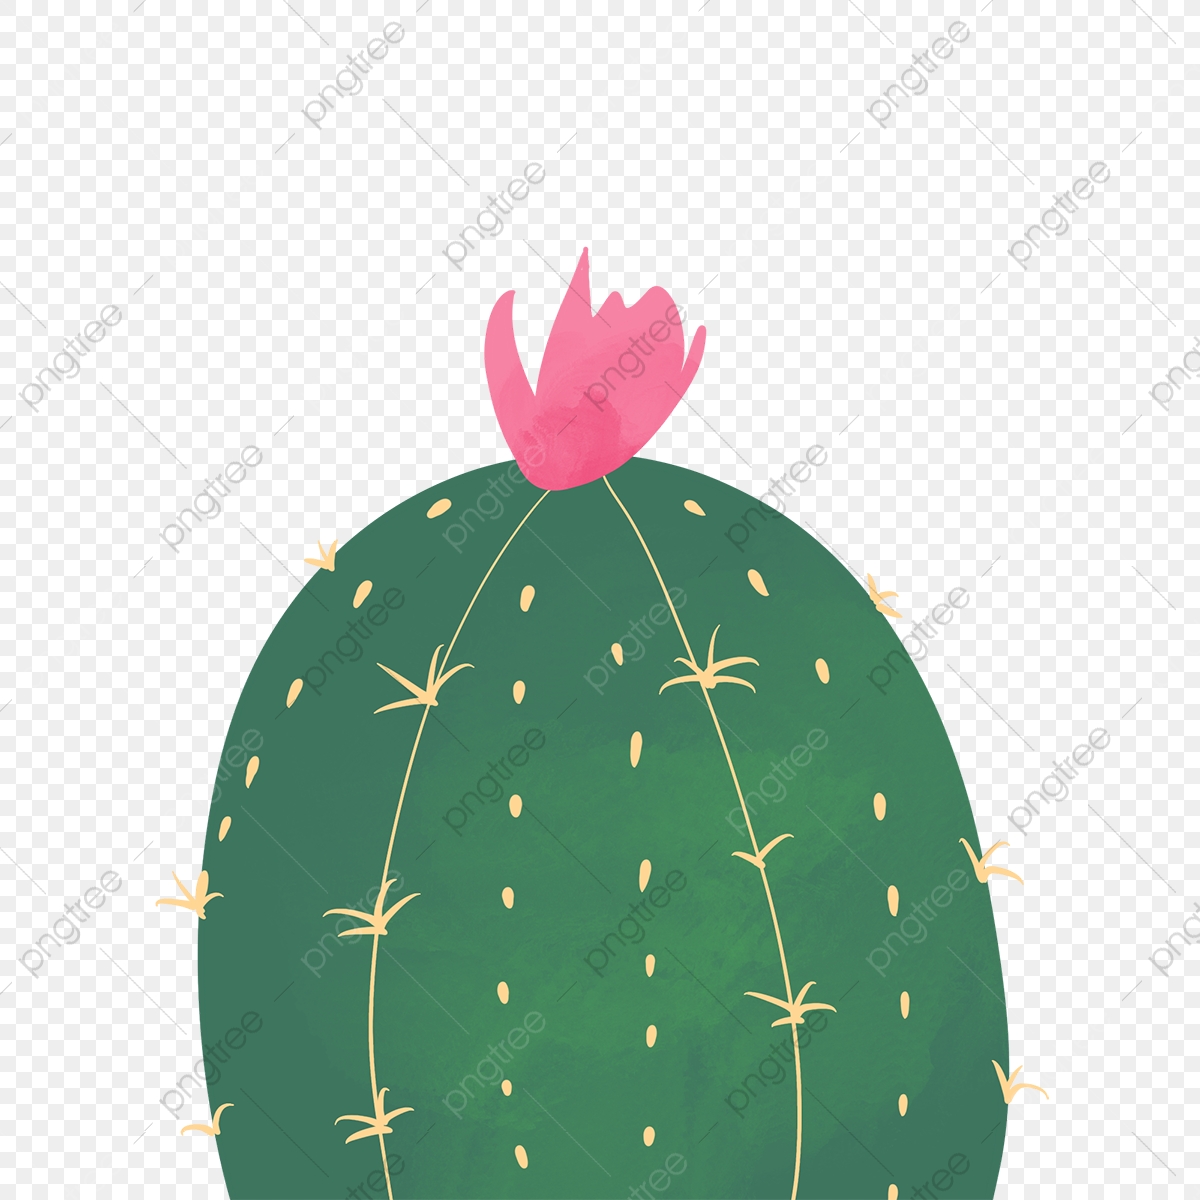 cactus clipart round